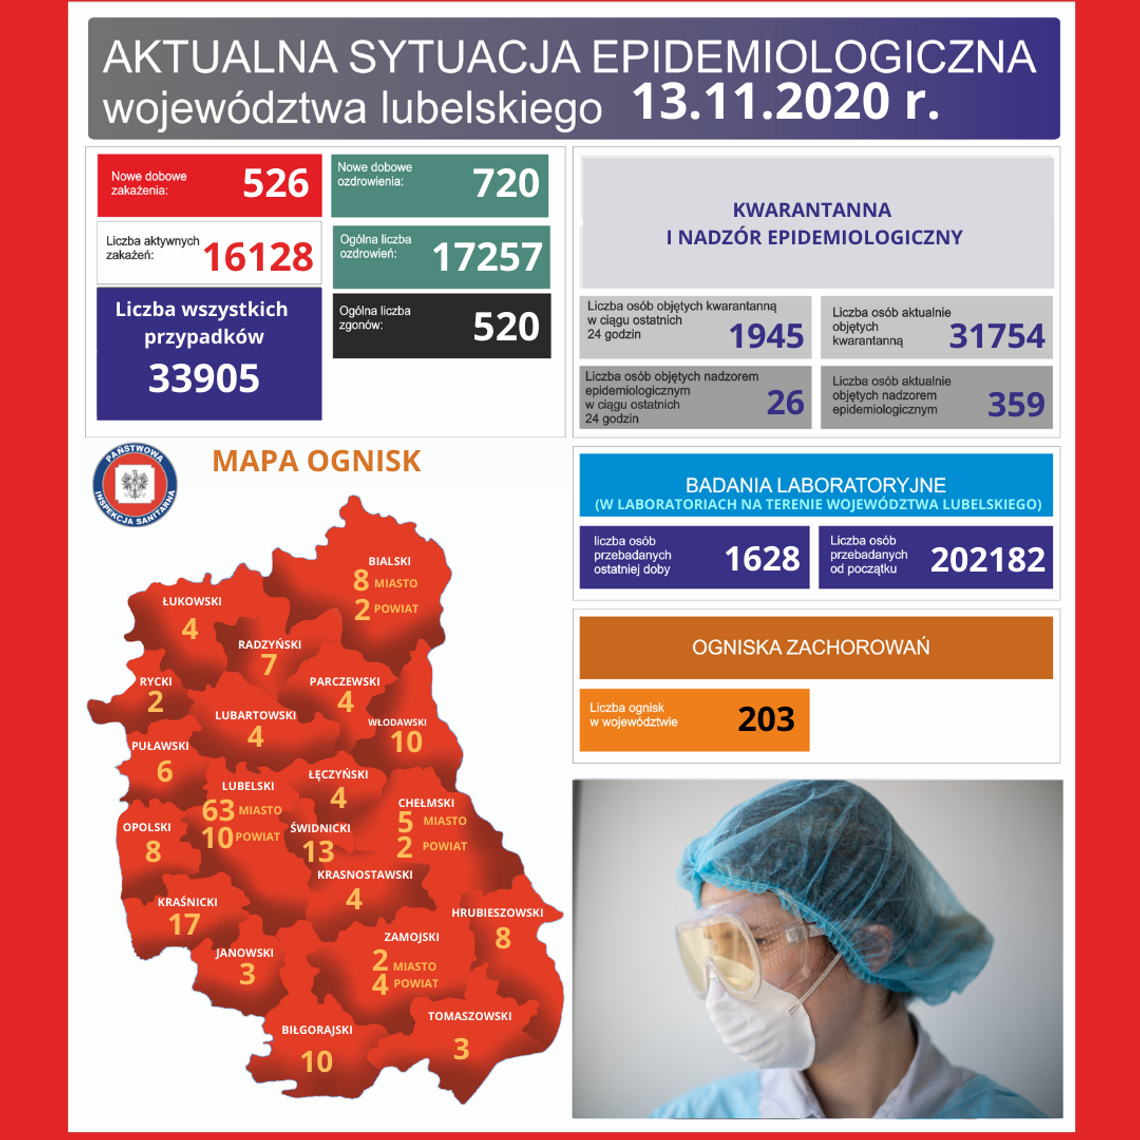 Jest 9 nowych ognisk koronawirusa, m.in. w szpitalach w Biłgoraju i Hrubieszowie